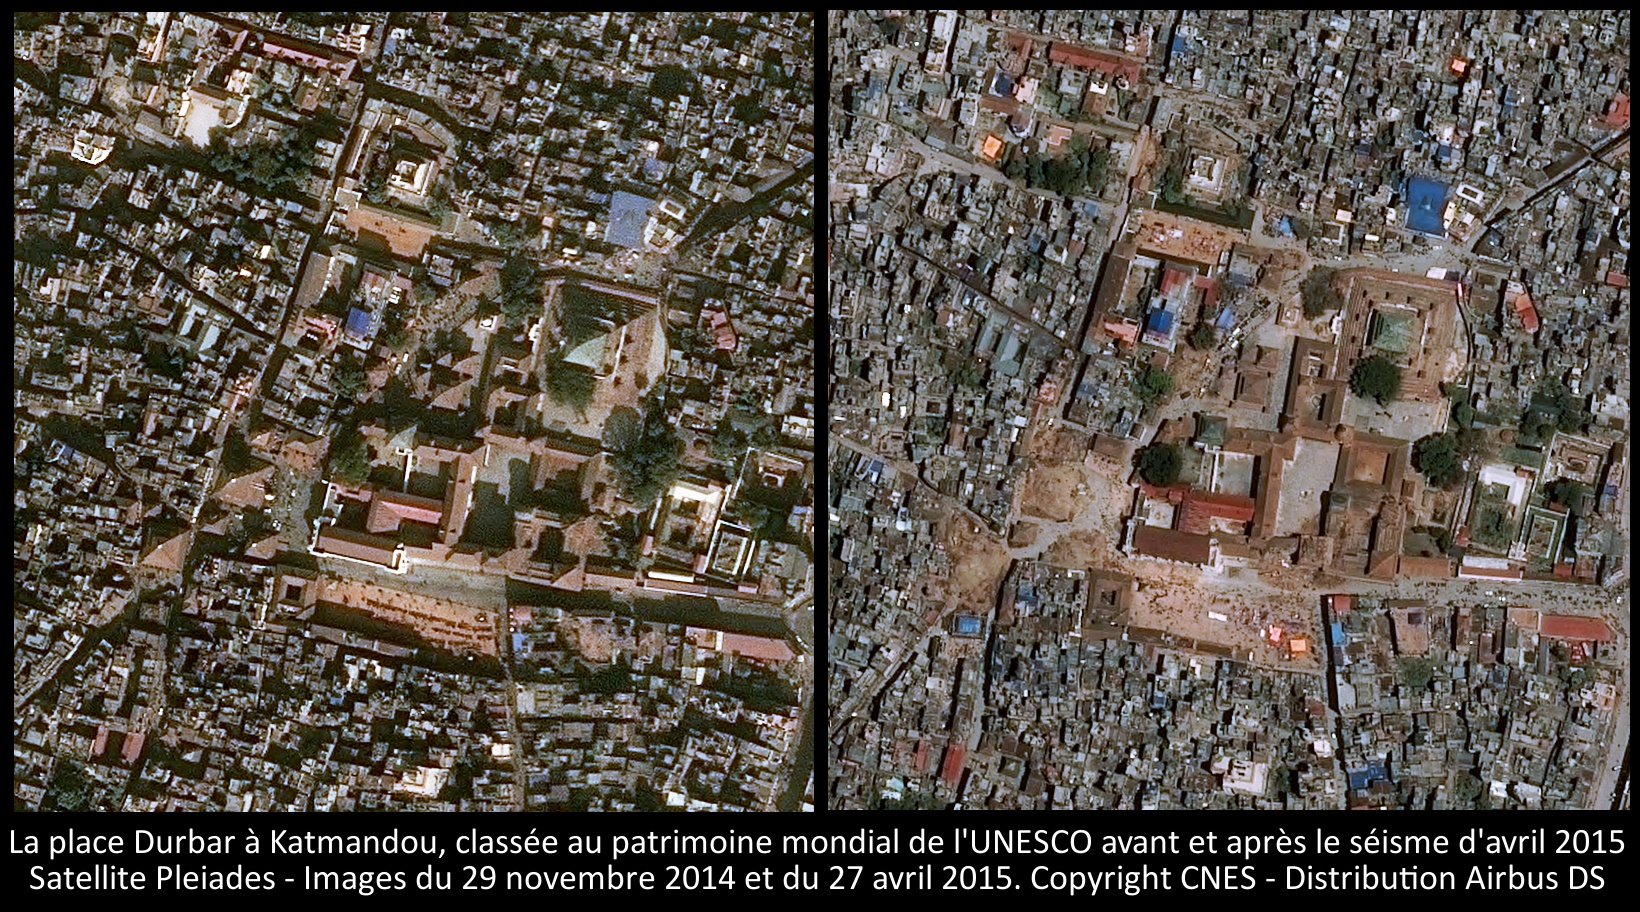 La place Durbar à Katmandou - Images du satellite Pleiades prises avant et après le séisme d'avril 2015 - CNES - Airbus DS